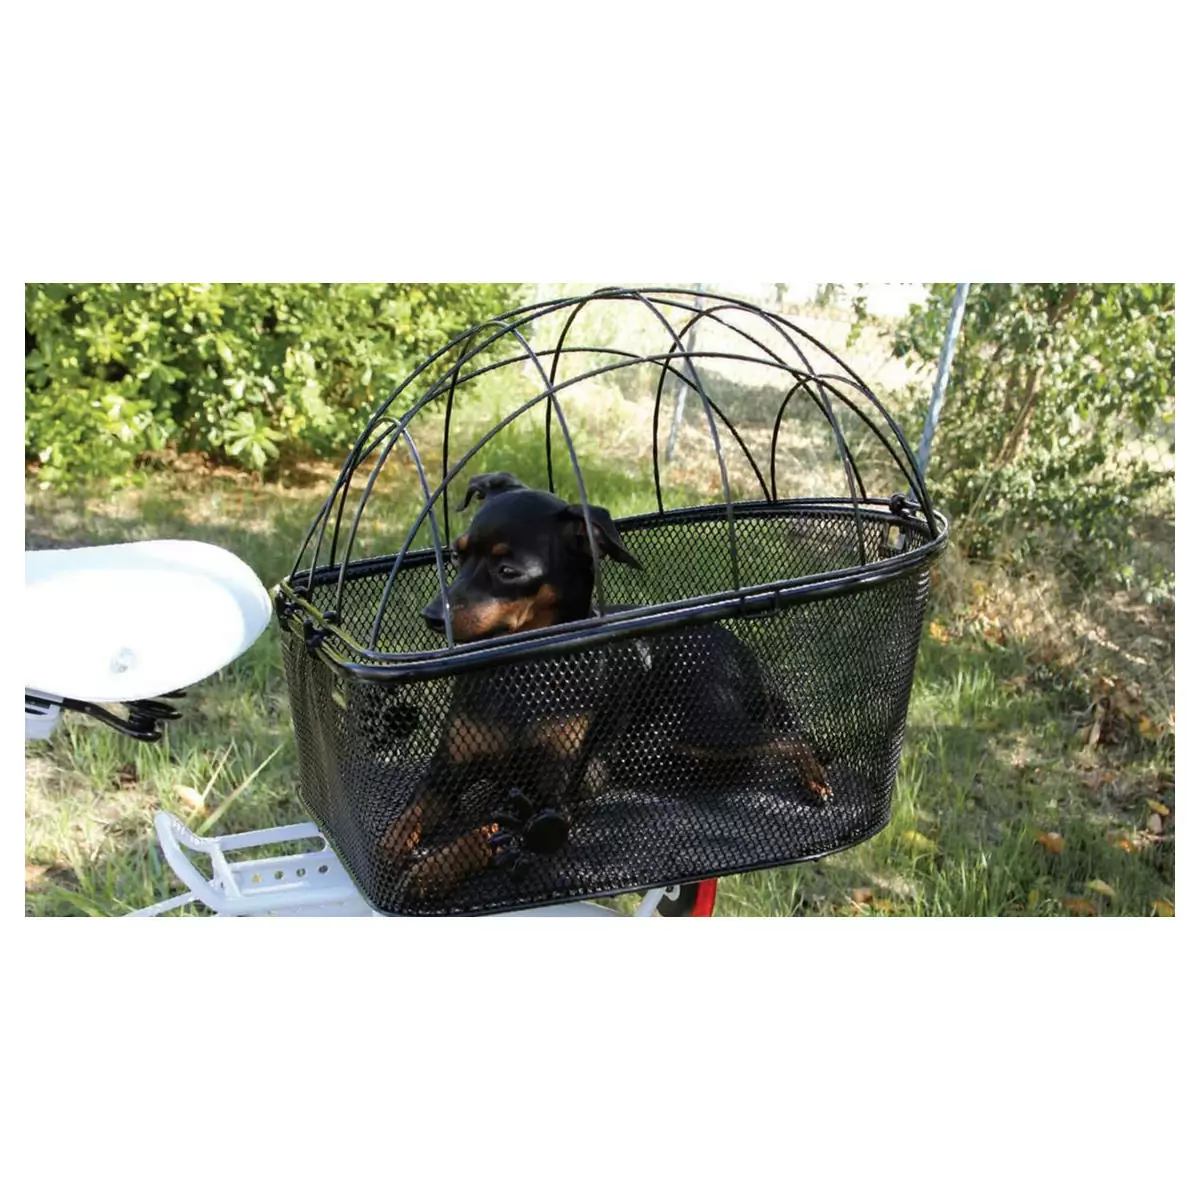 Basket Puppy For Animal Transport For Rack #1